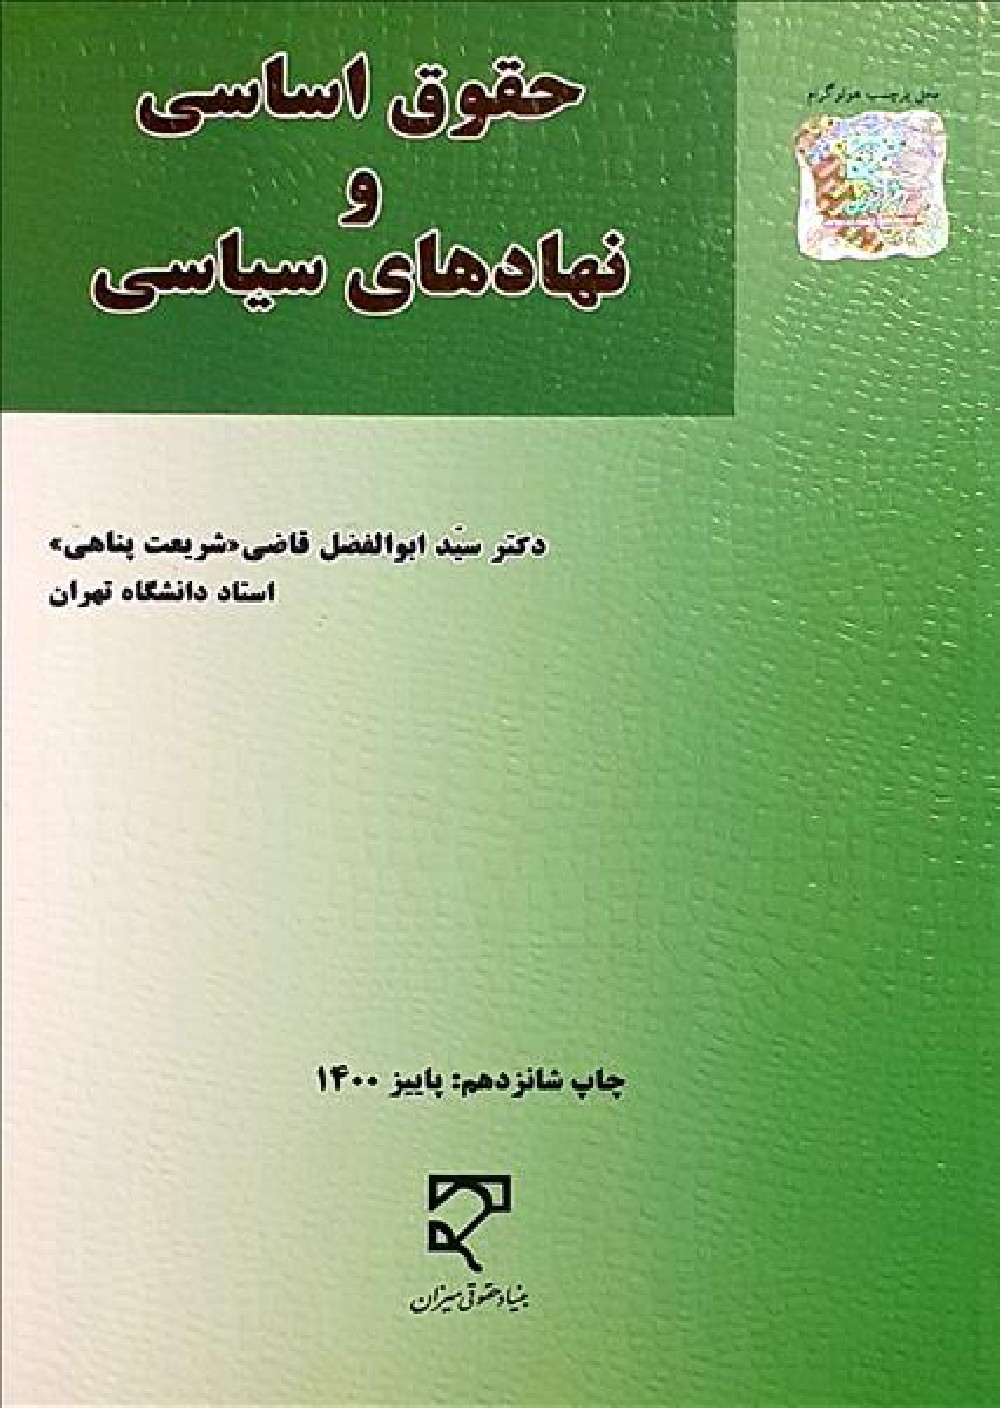 دانلود کتاب حقوق اساسی و نهادهای سیاسی ابوالفضل قاضی pdf